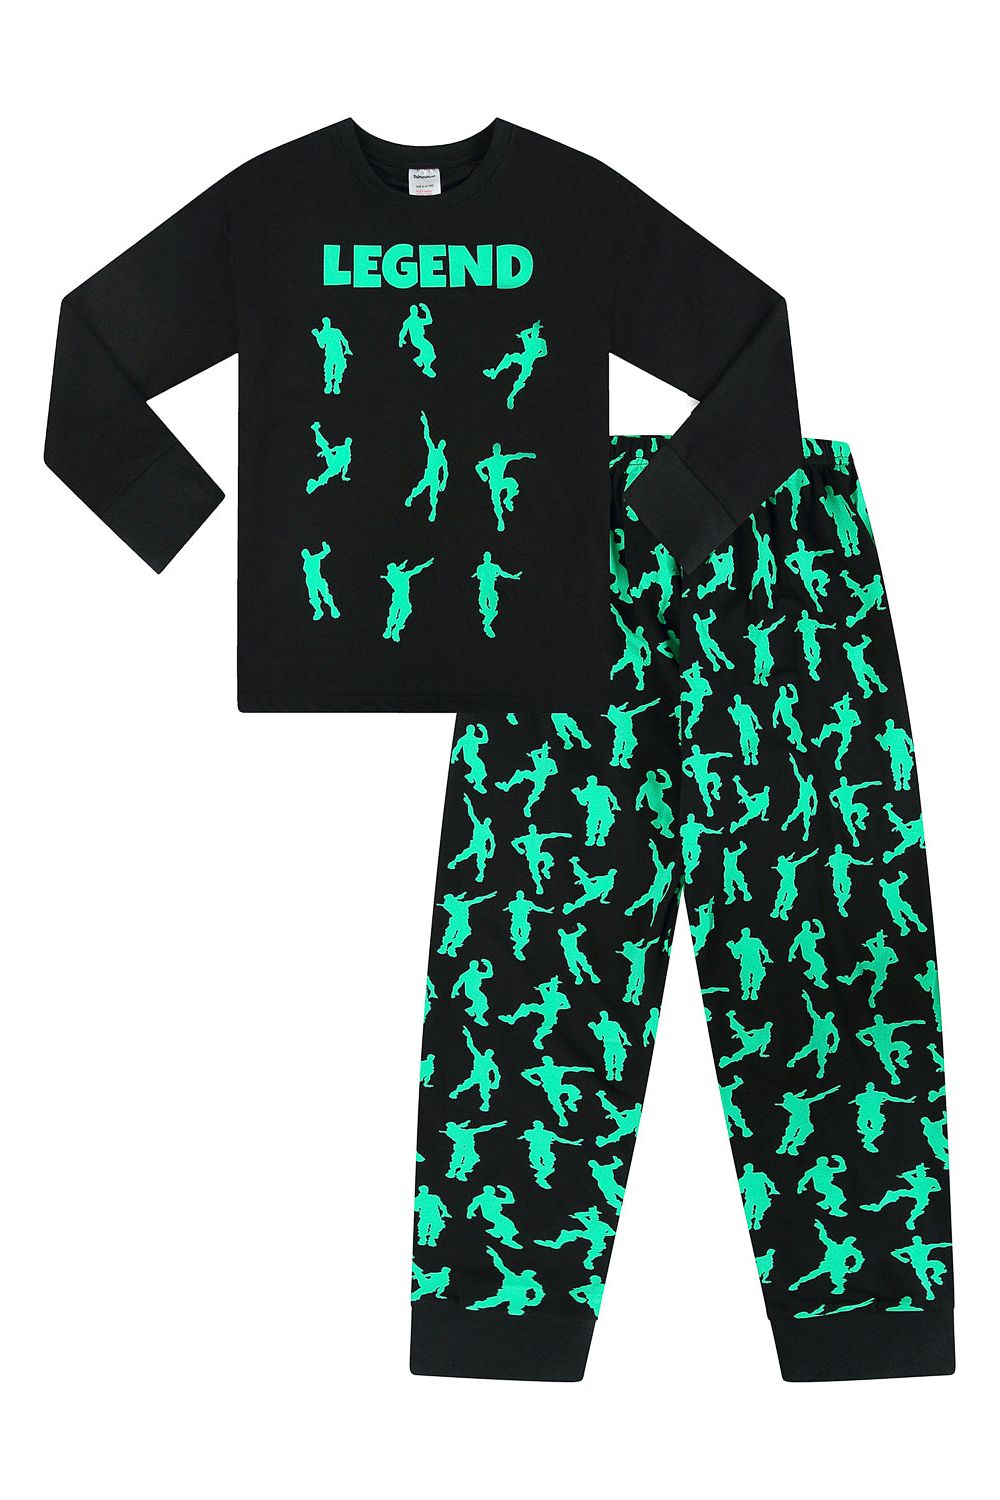 Legend Emote Dance Gaming Green Long Pyjamas - Pyjamas.com